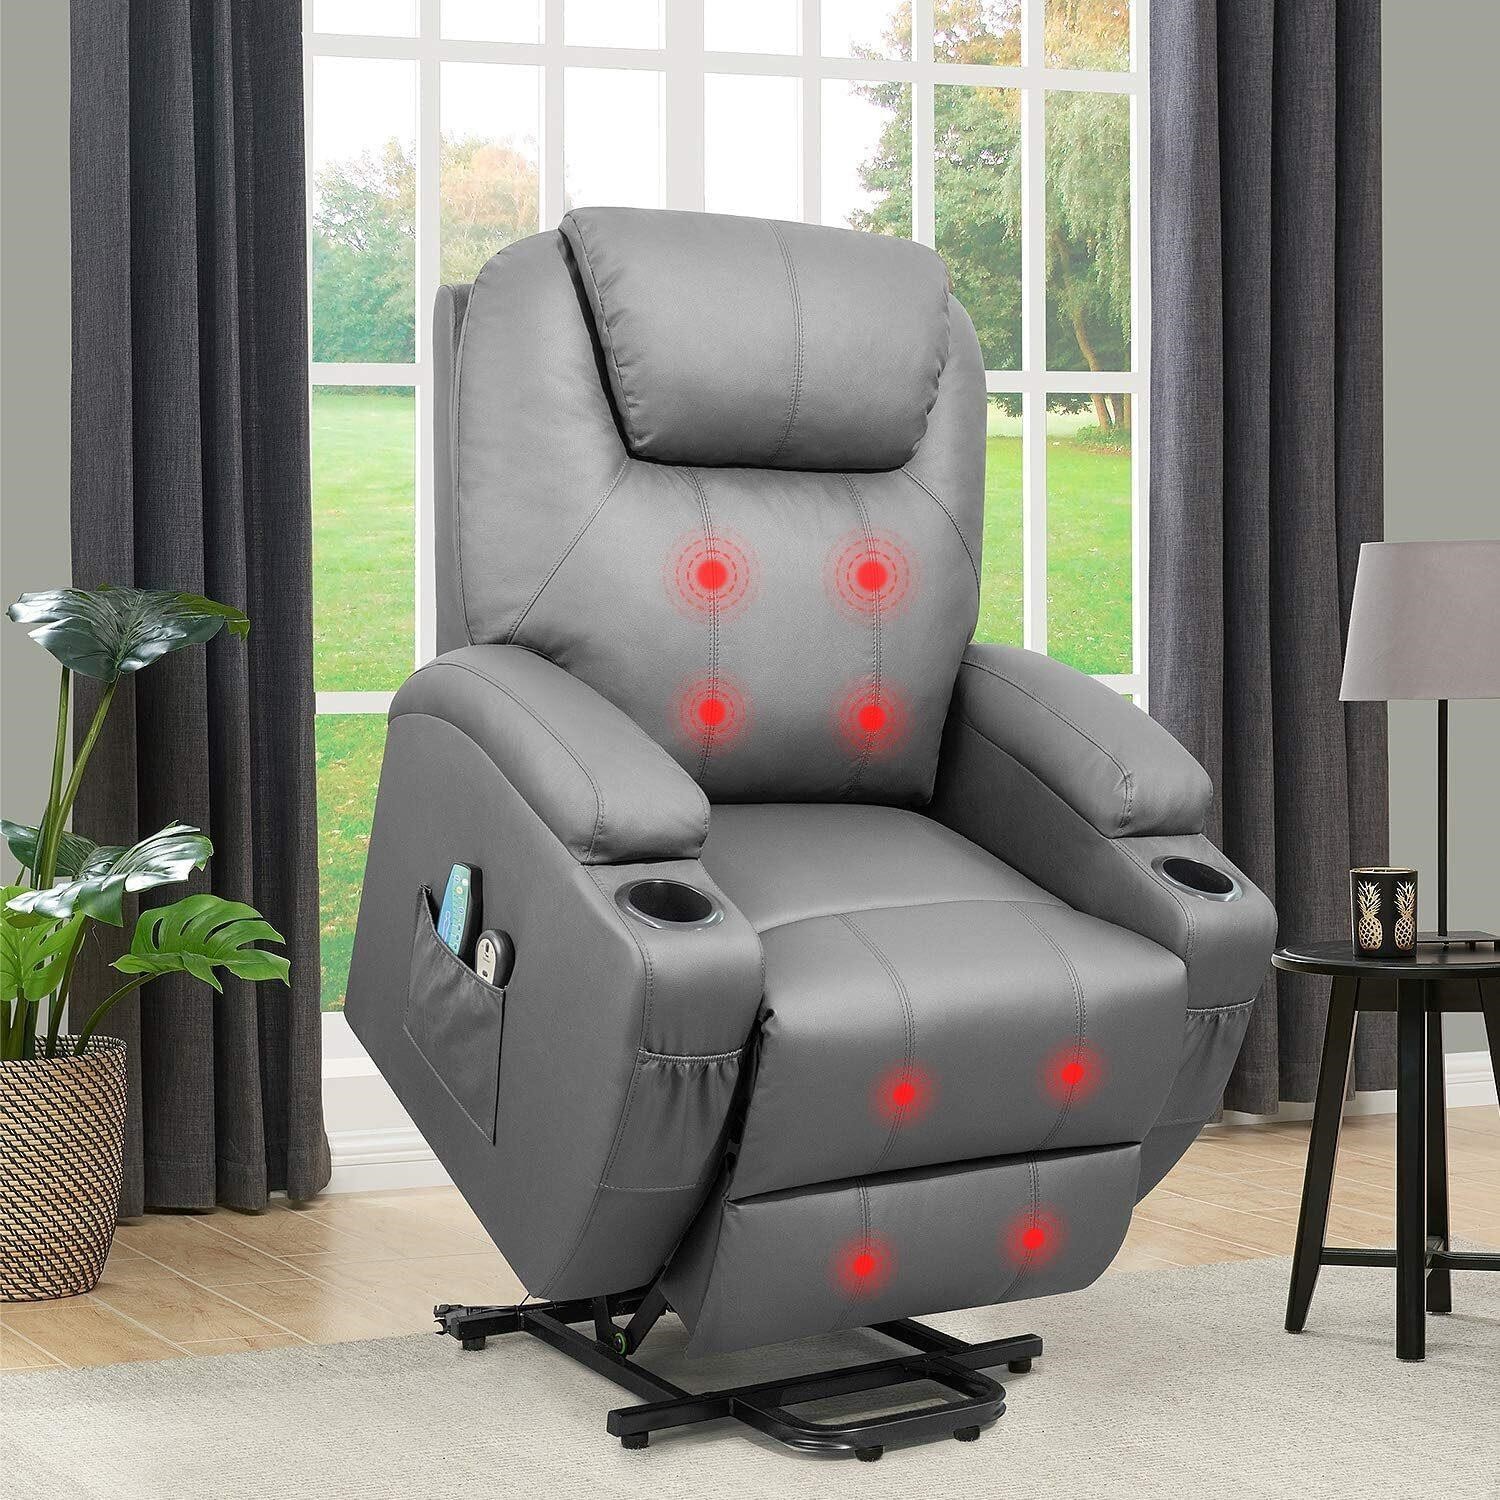 Flamaker Lift Recliner Chair  Gray Massage